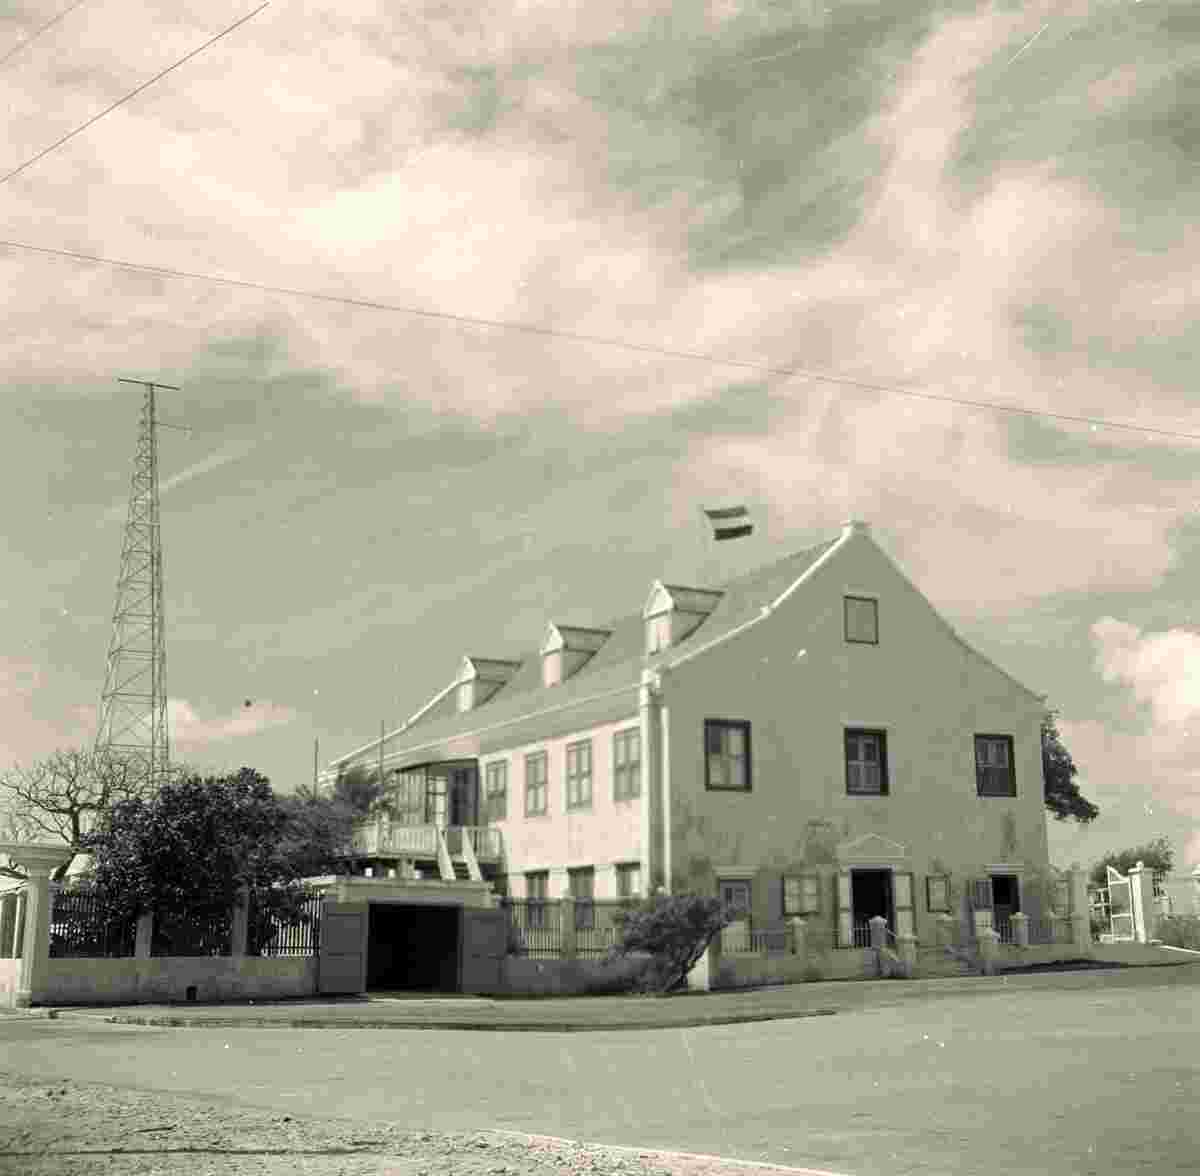 Kralendijk. The Lieutenant Governor's Office, 1947